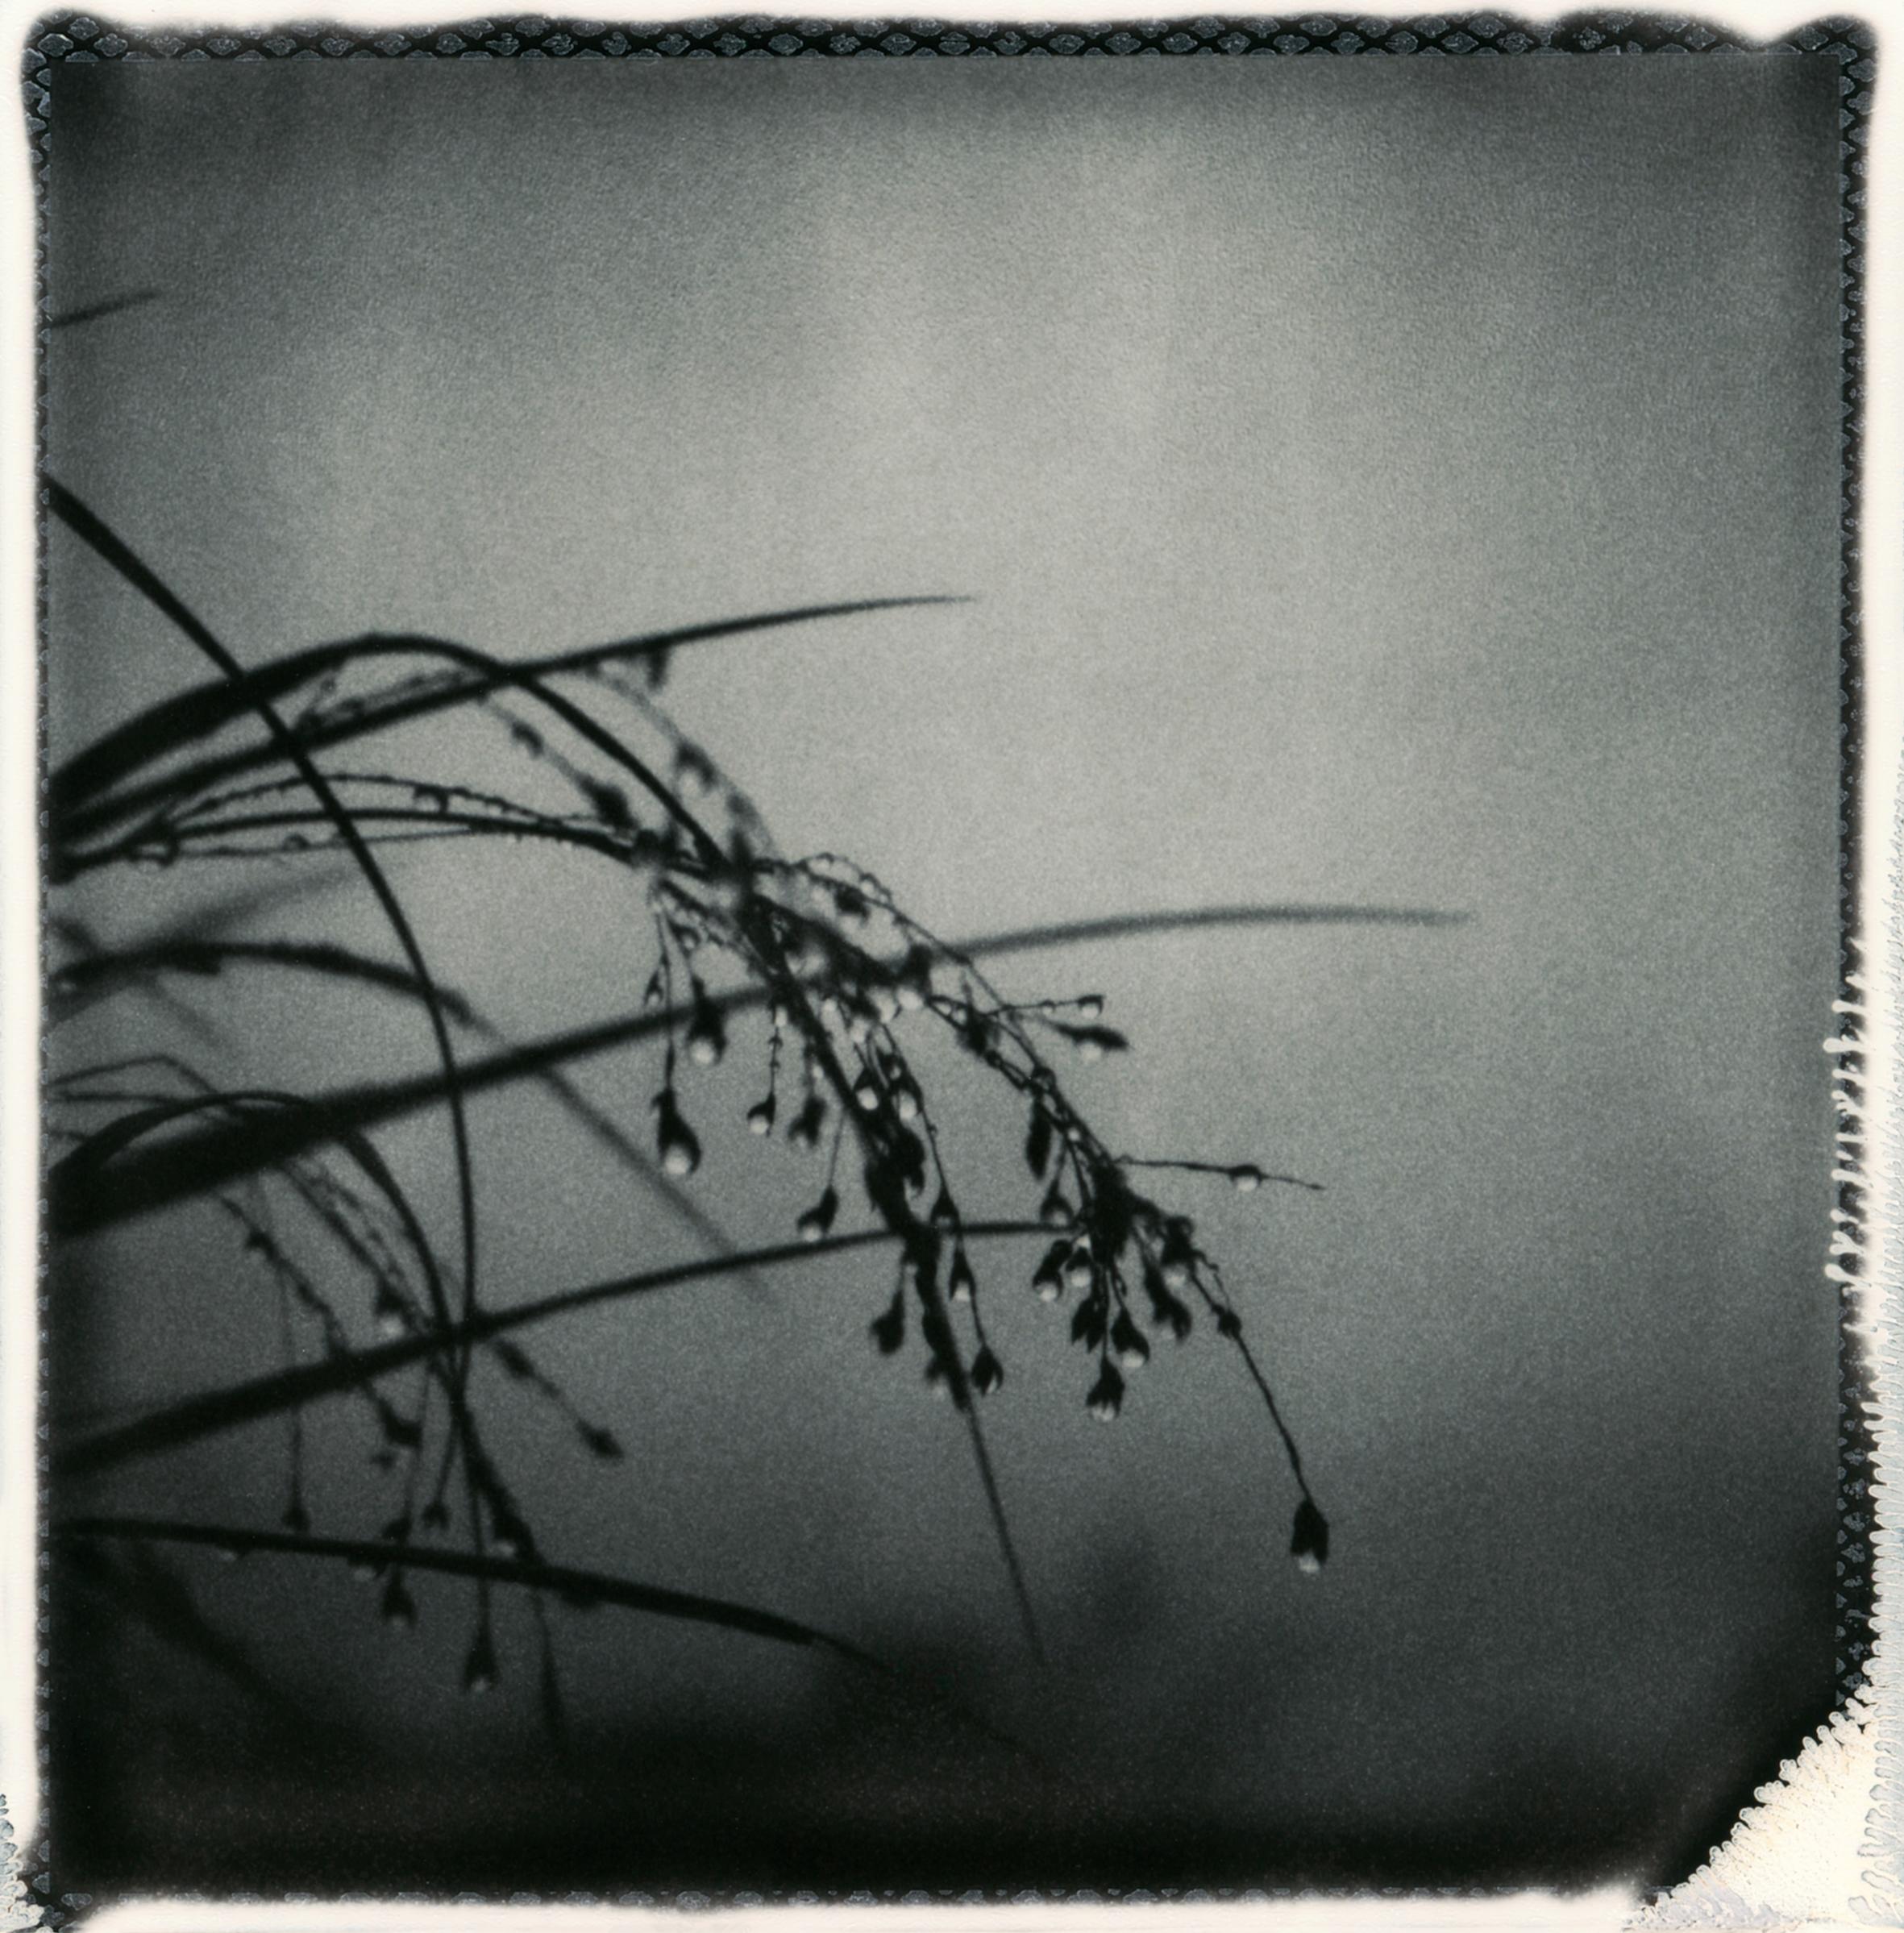 Oktoberregen - Polaroid-Schwarzweiß-Blumenfotografie, Limitierte Auflage 20